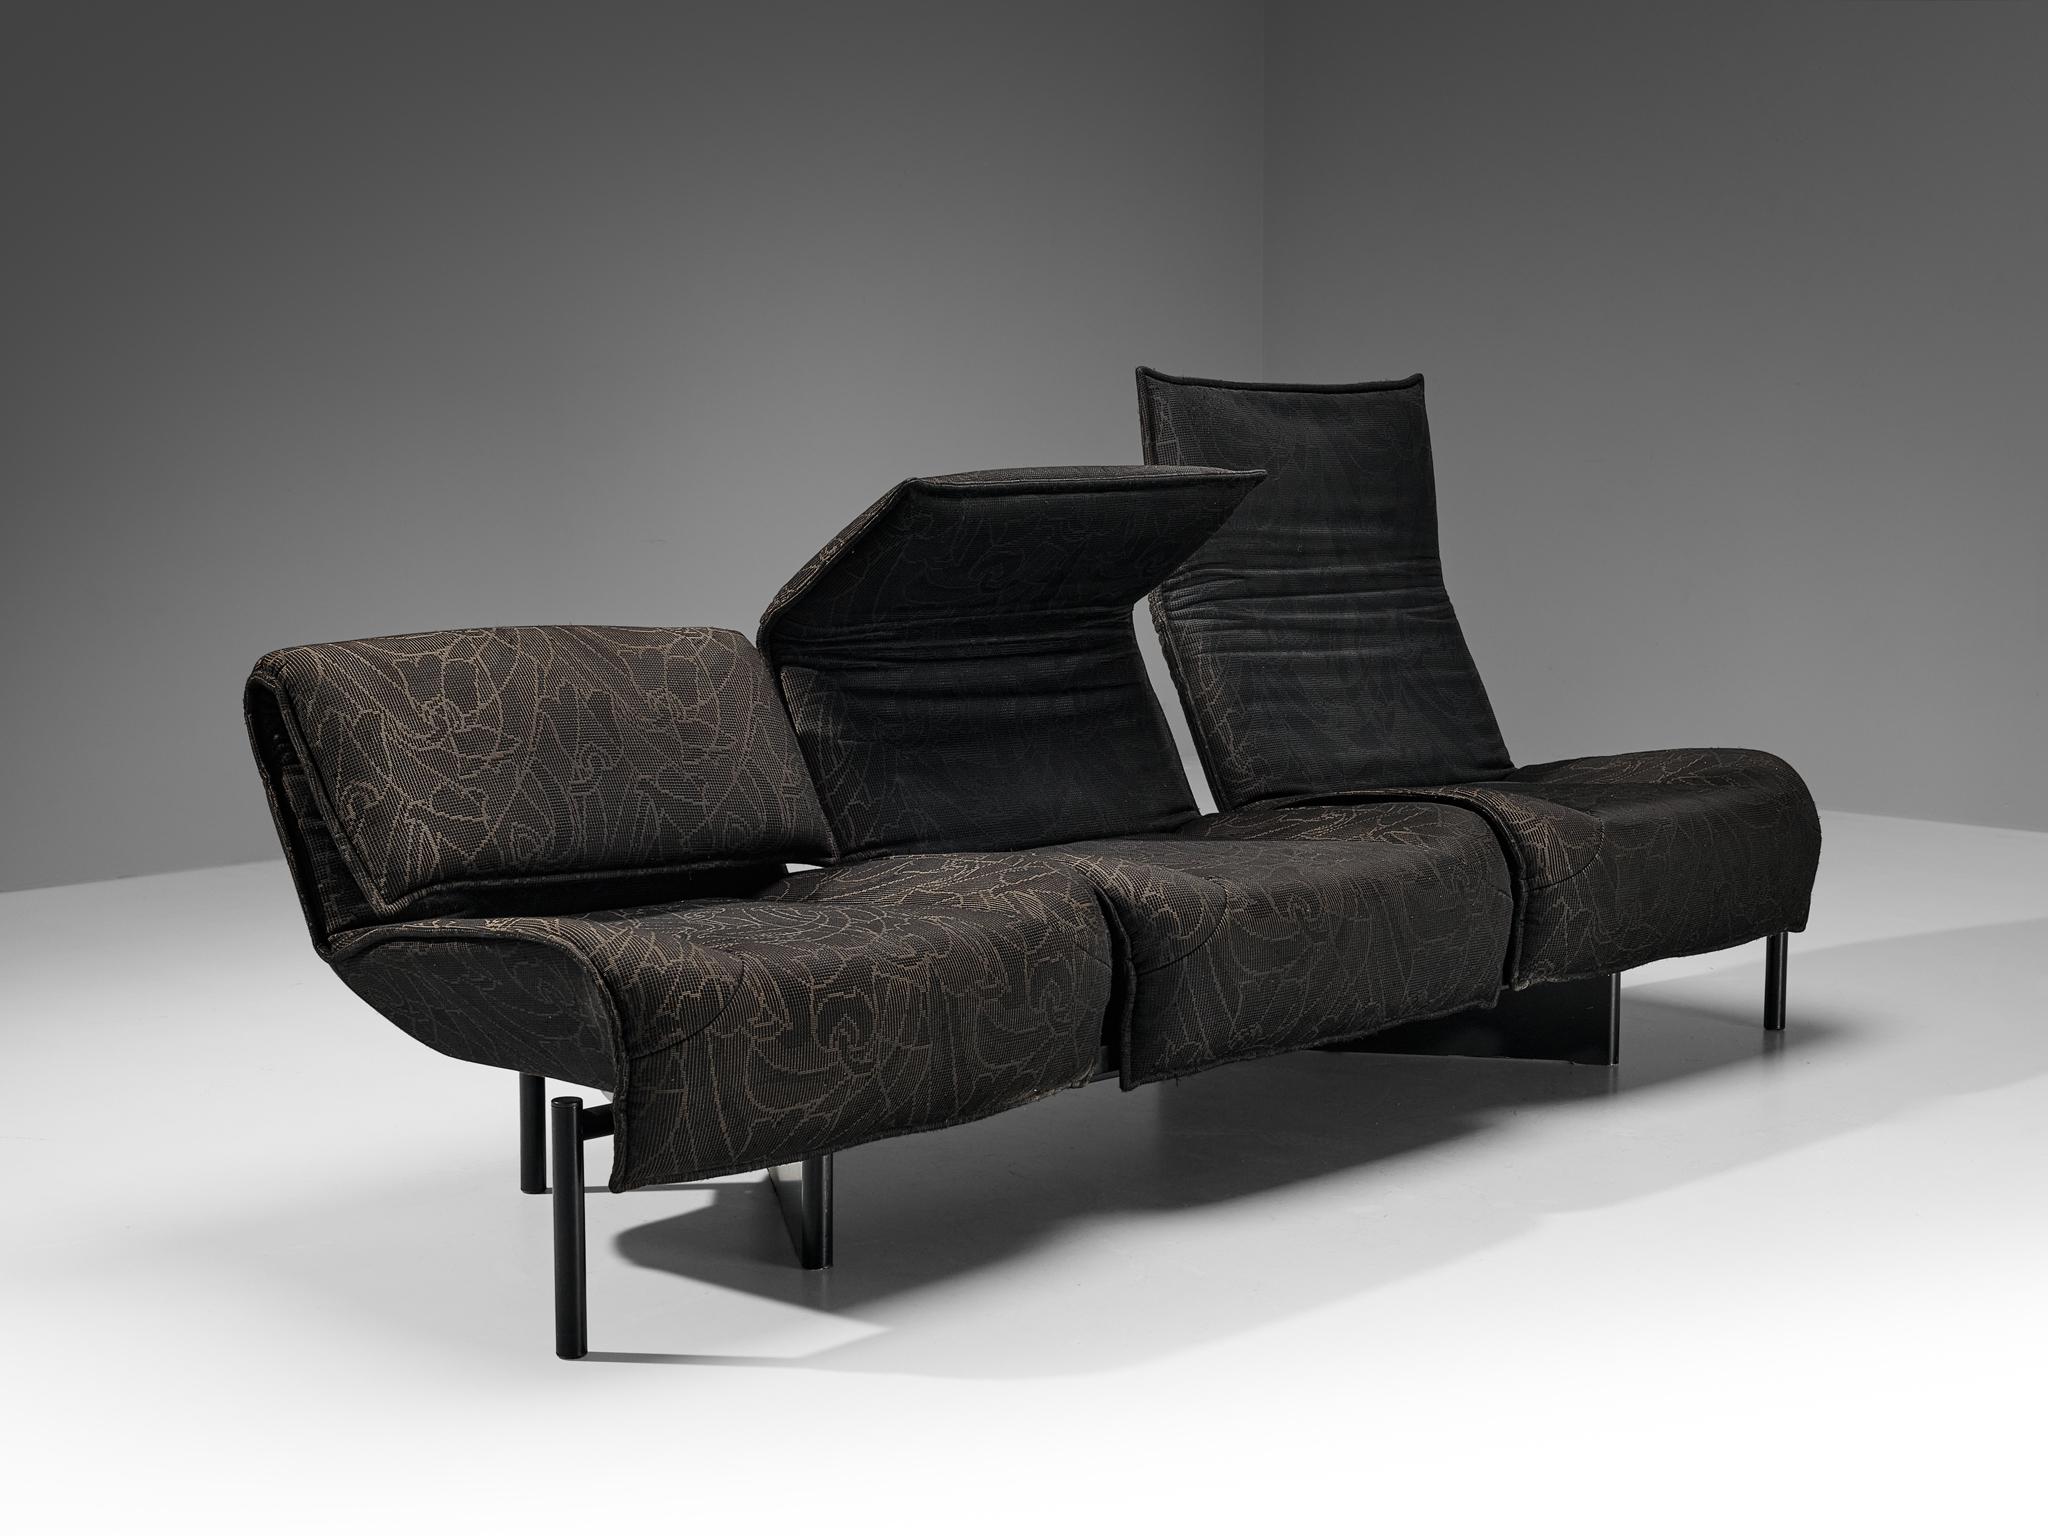 Steel Vigo Magistretti for Cassina 'Veranda' Sofa in Dark Grey Upholstery  For Sale